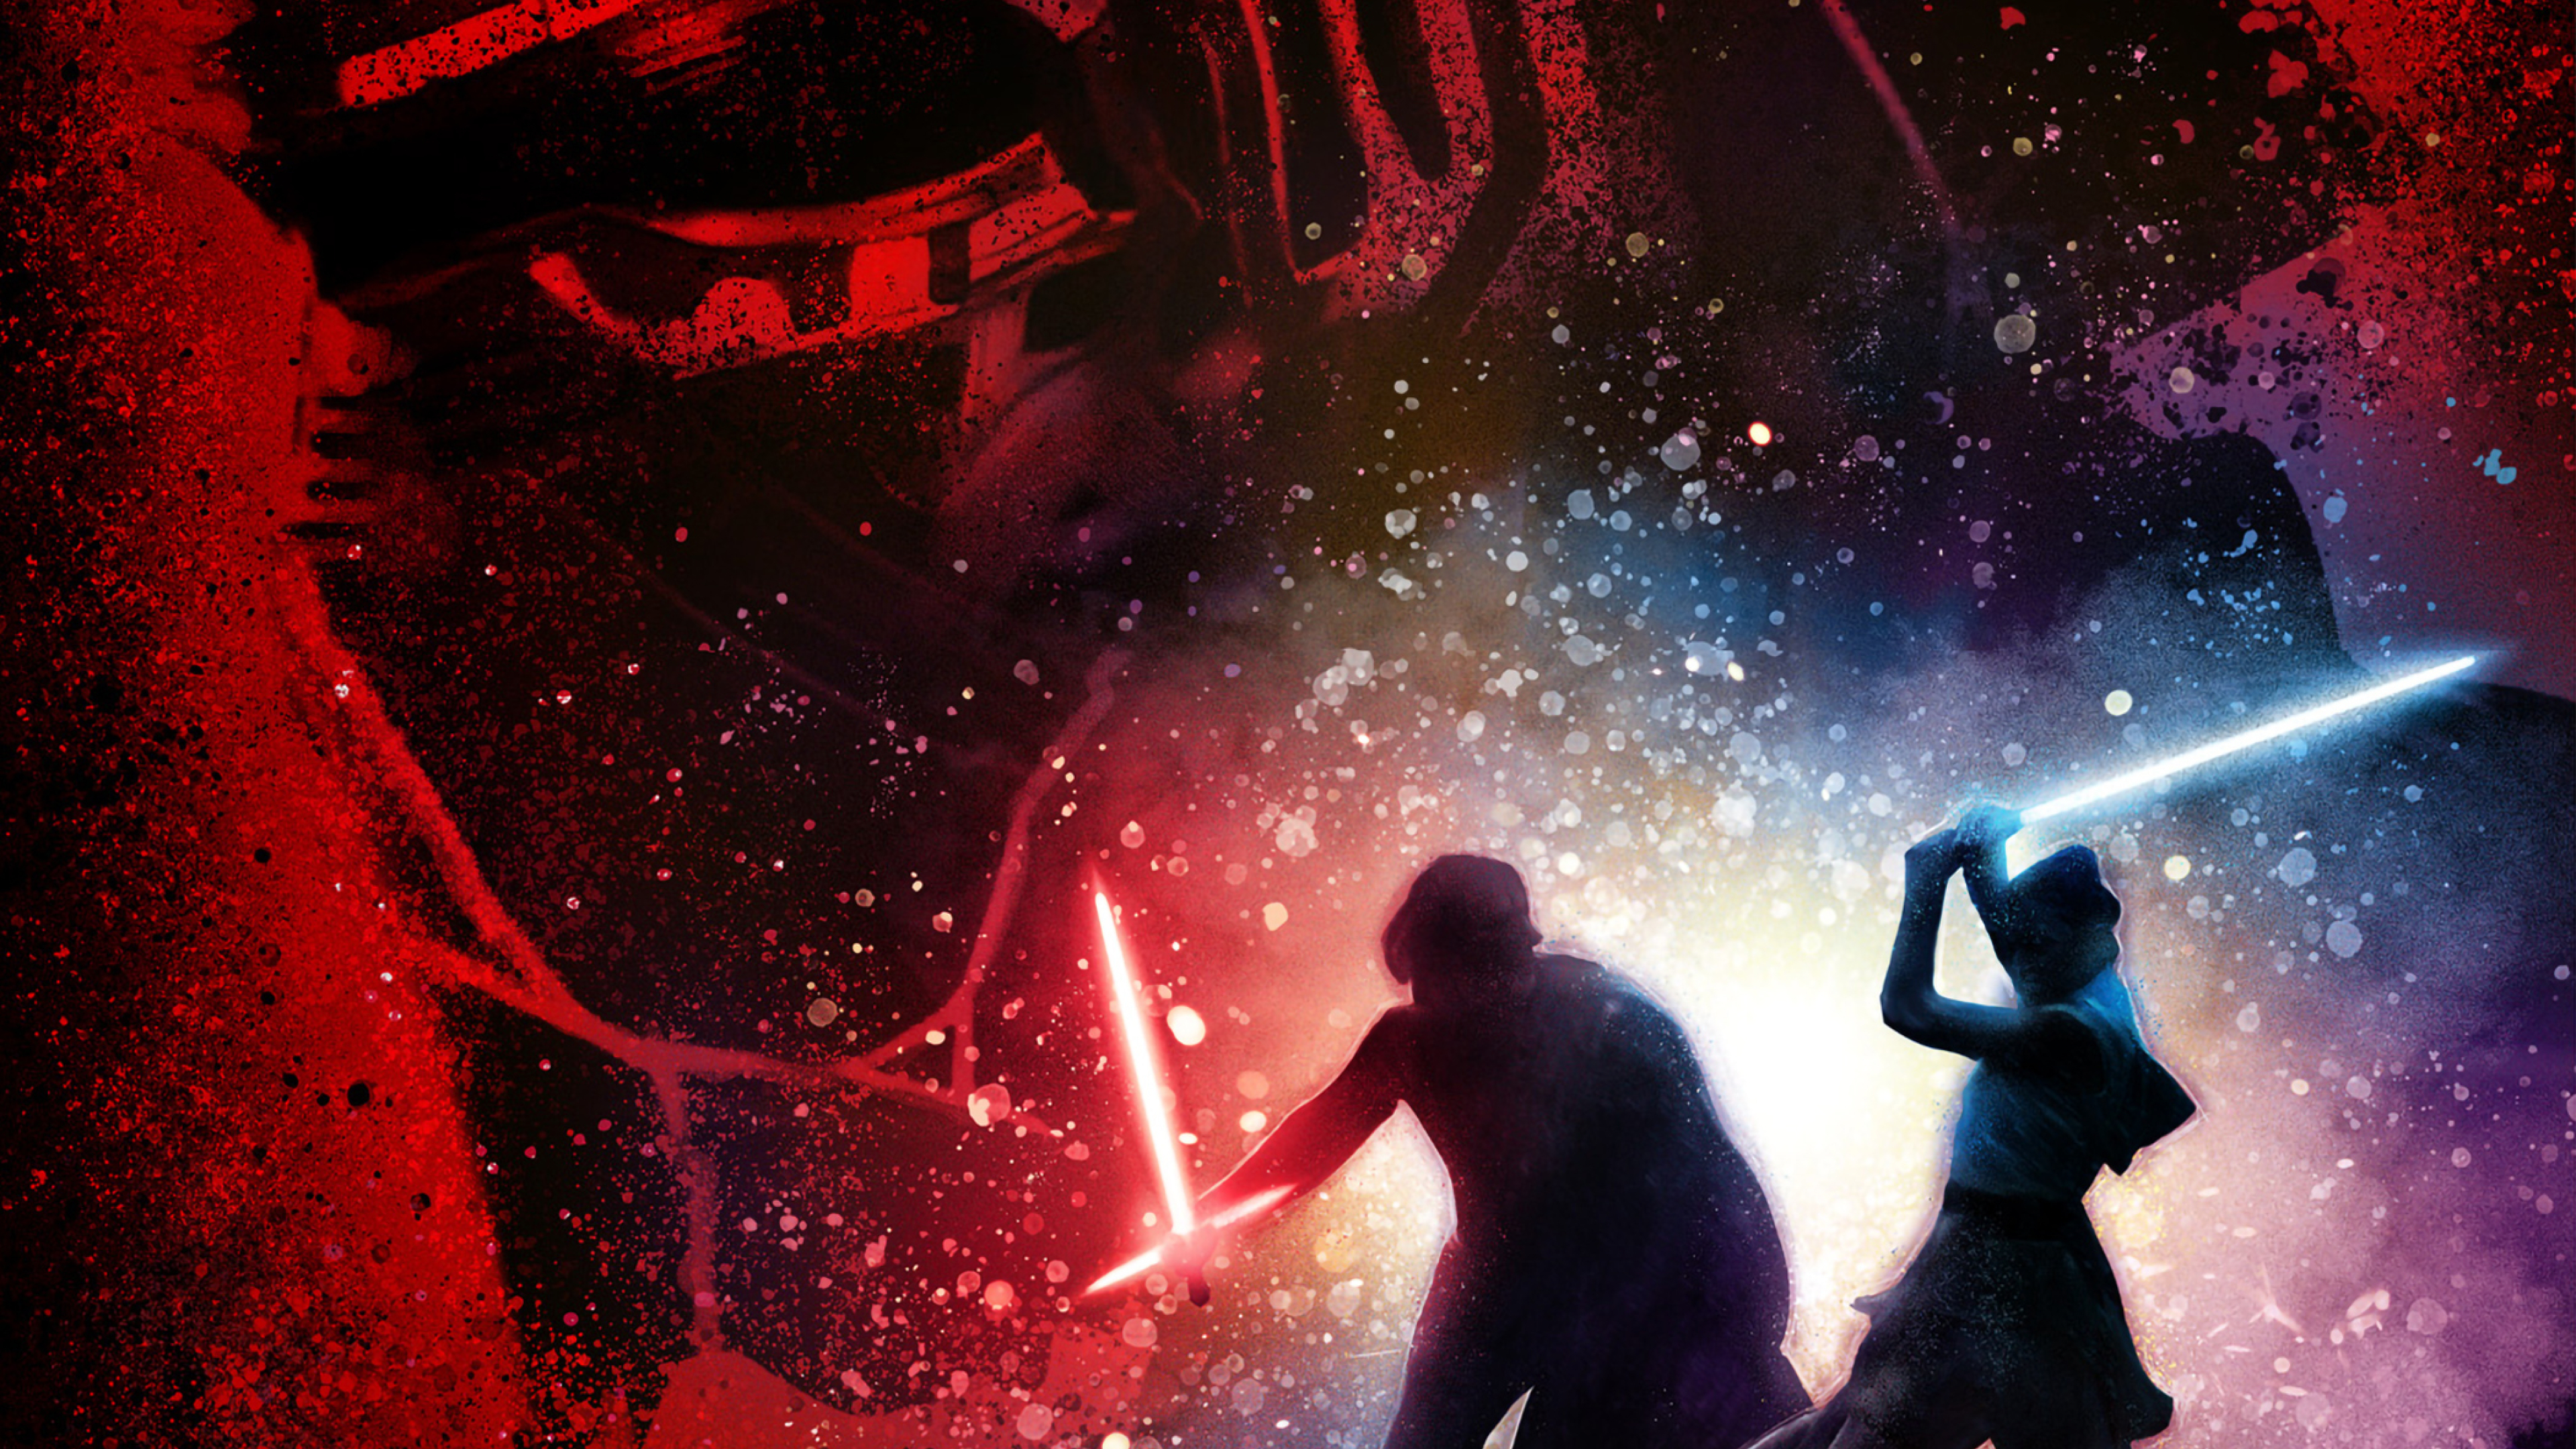 3840x2160 Poster Of Star Wars 9 4K Wallpaper, HD Movies 4K ...